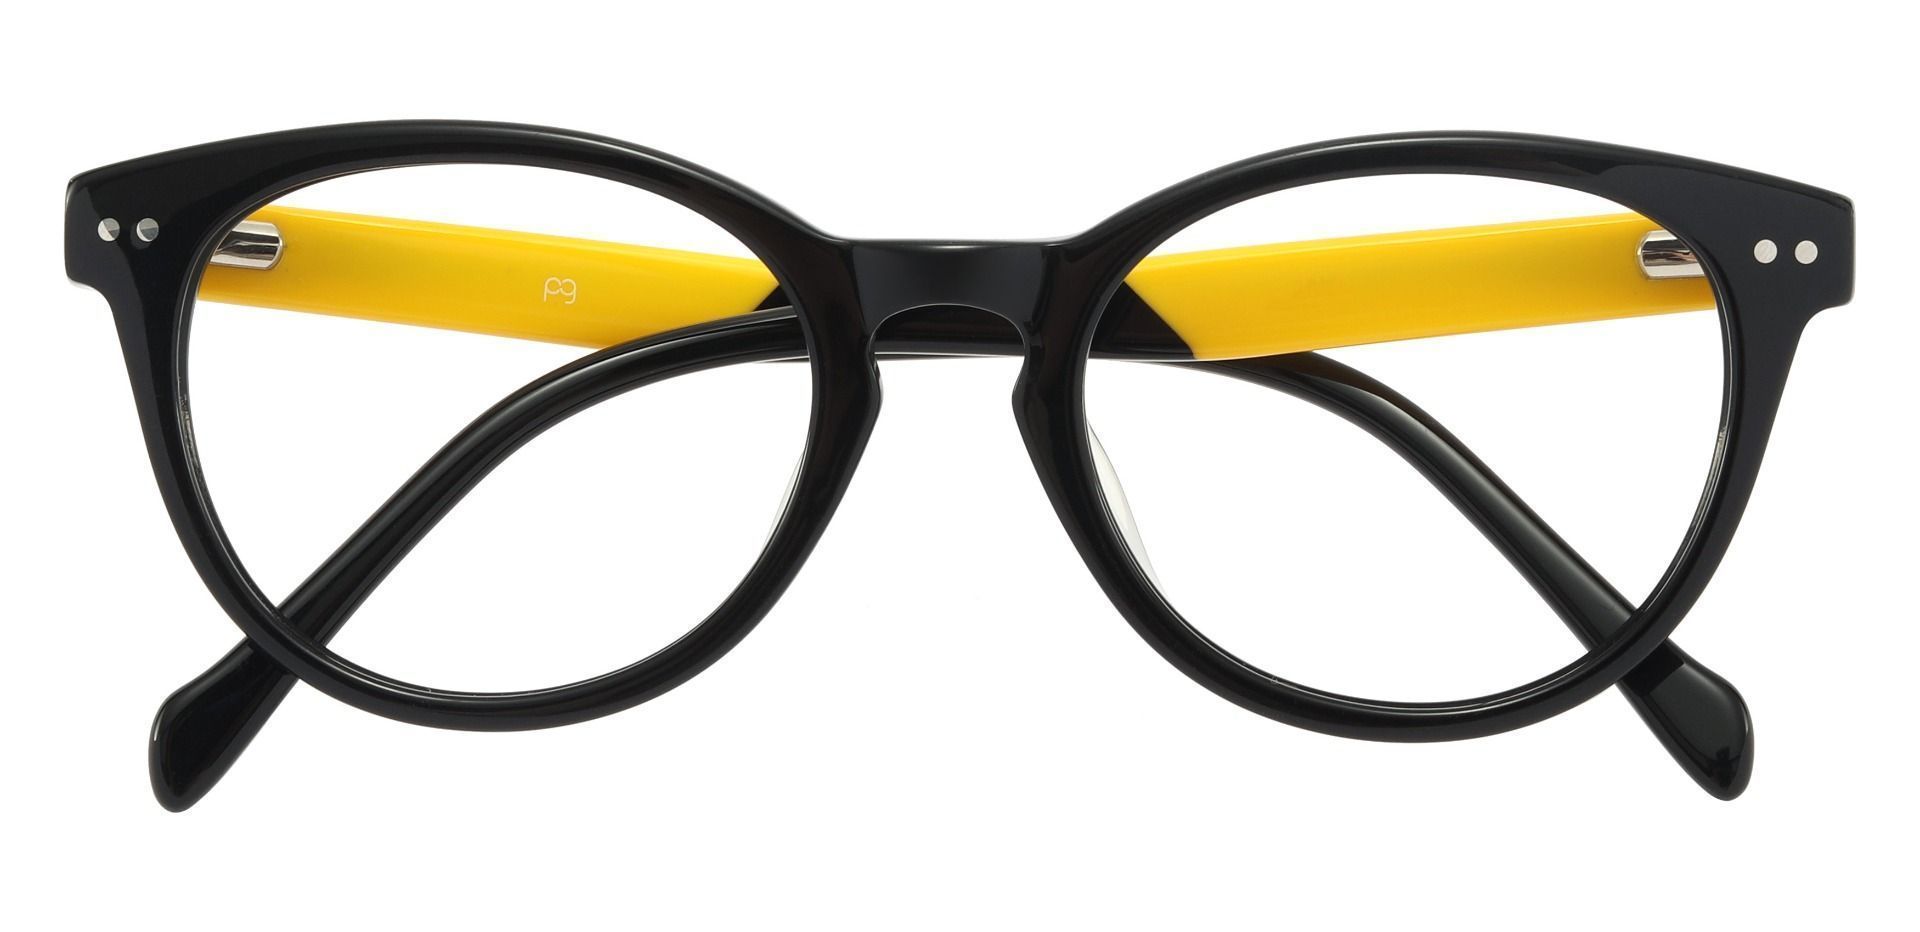 Carson Oval Eyeglasses Frame - Black